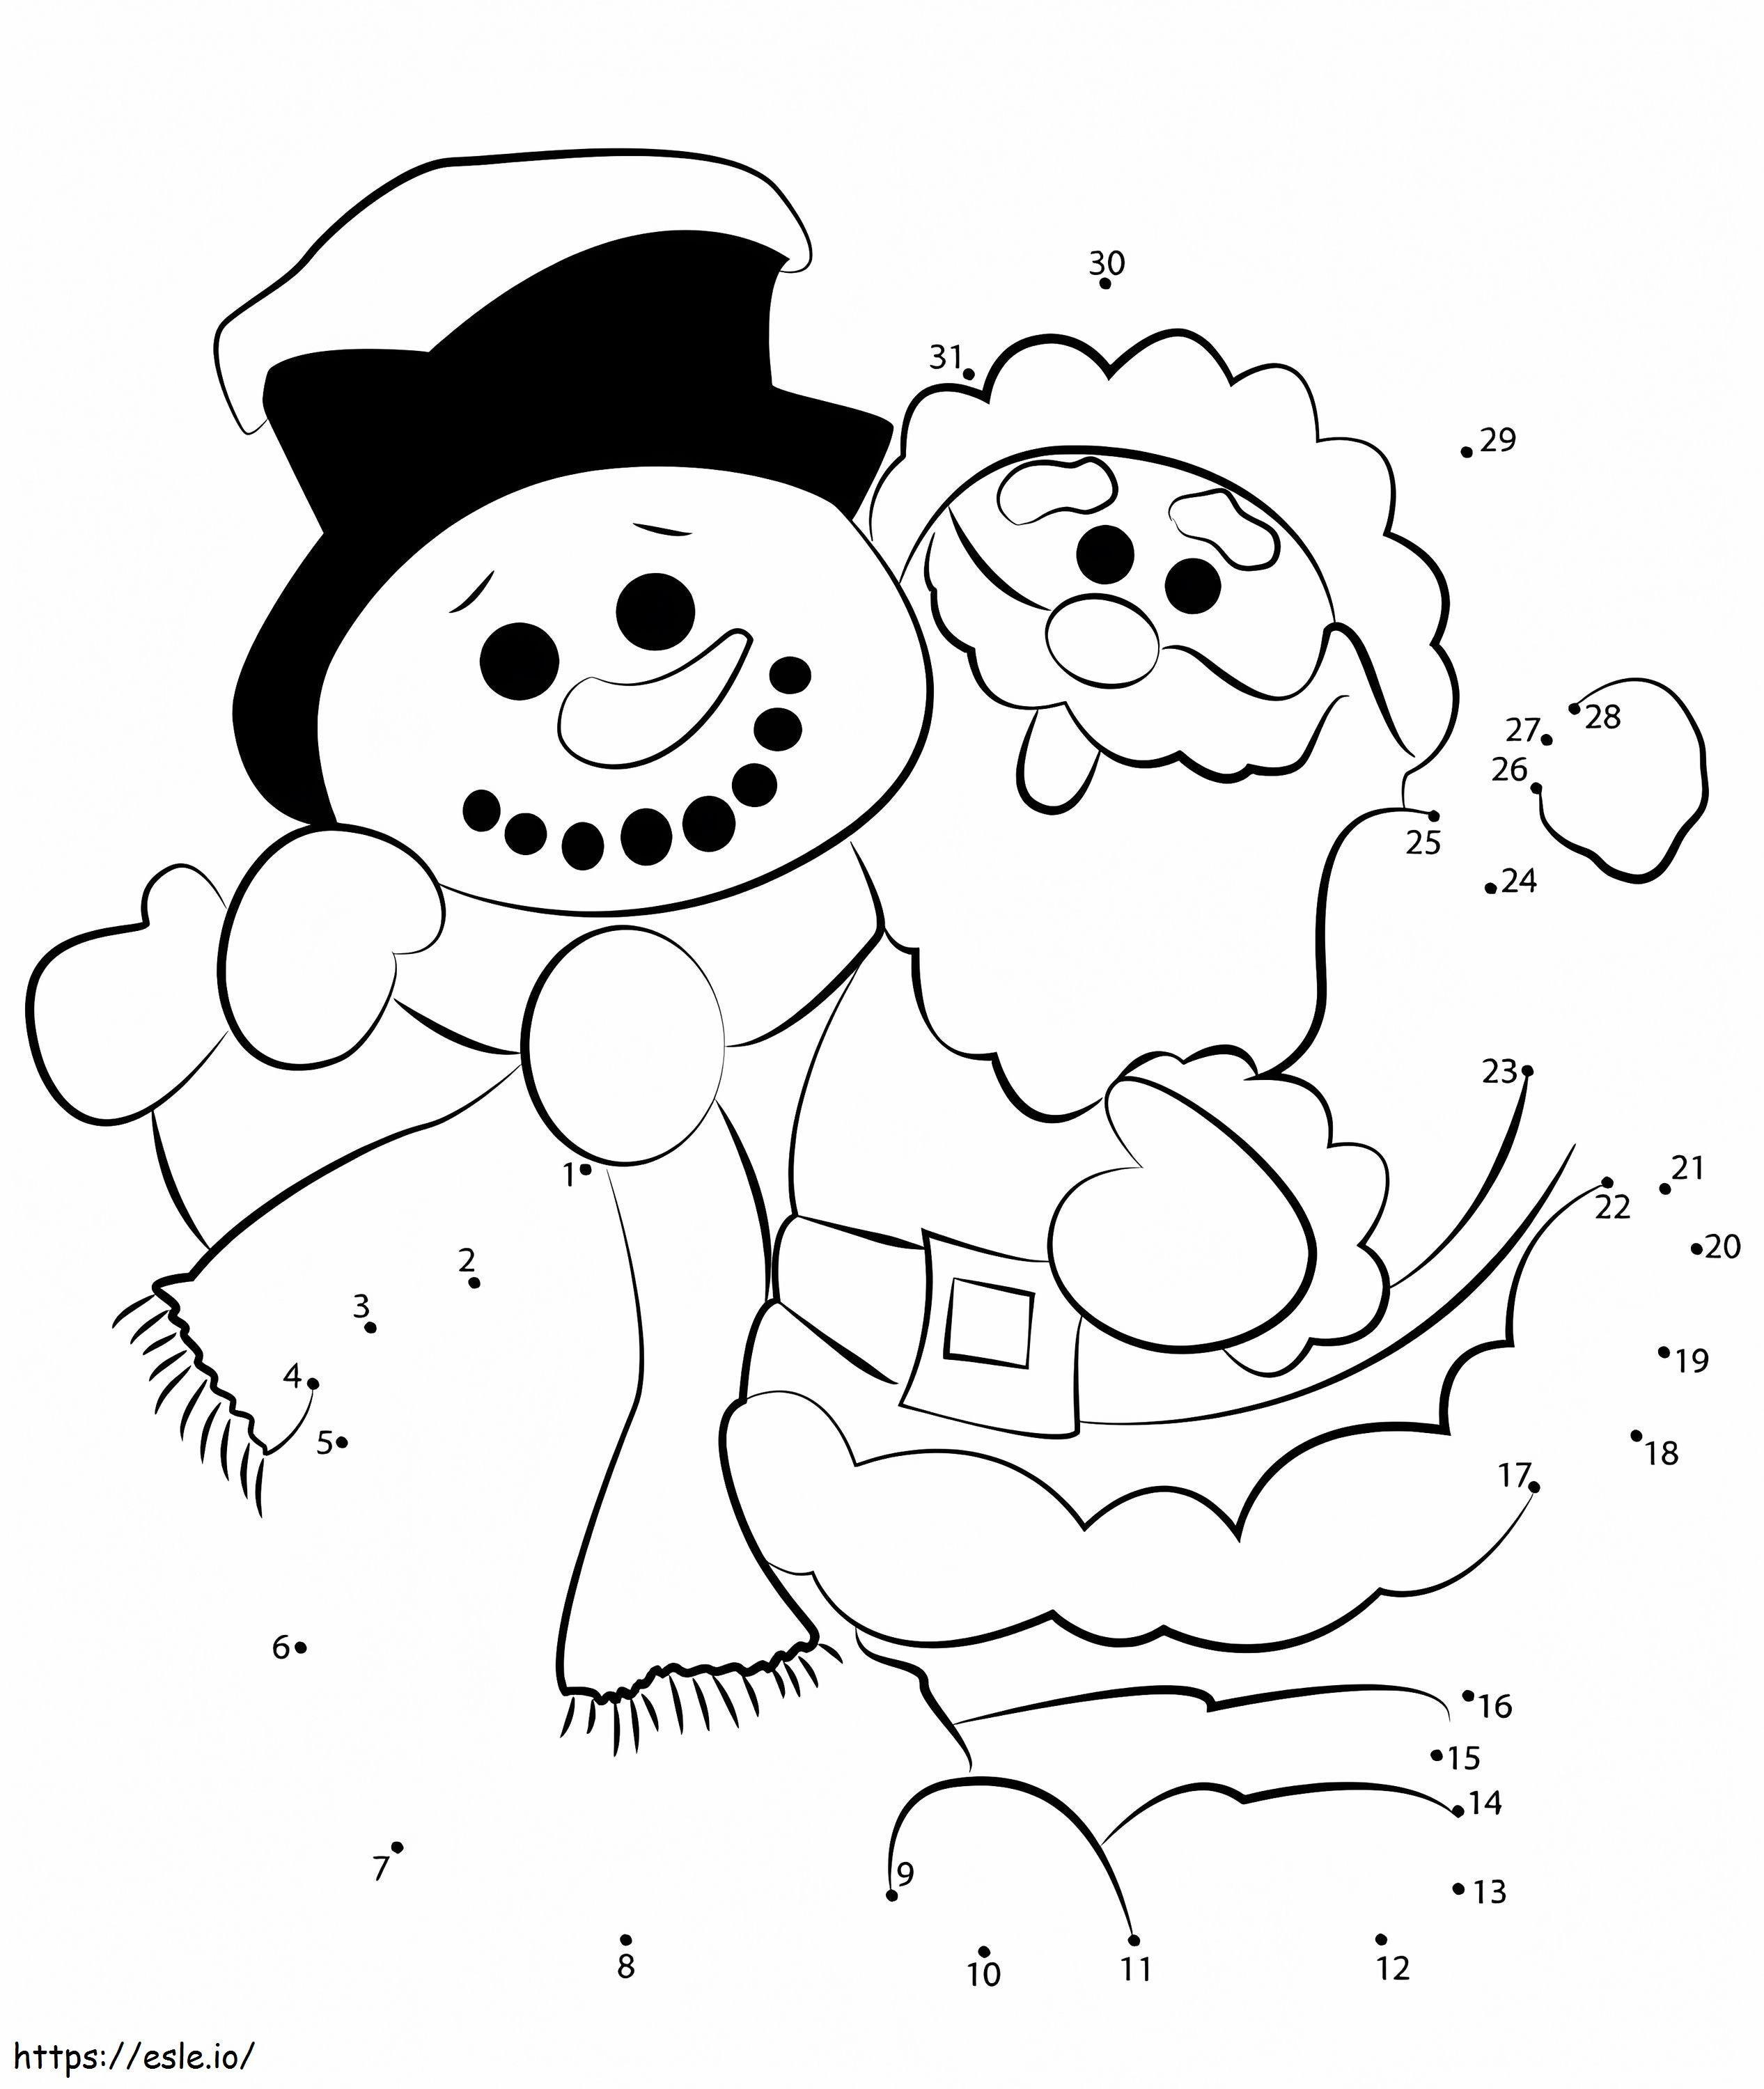 Weihnachtsmann mit Schneemann Punkt zu Punkt ausmalbilder